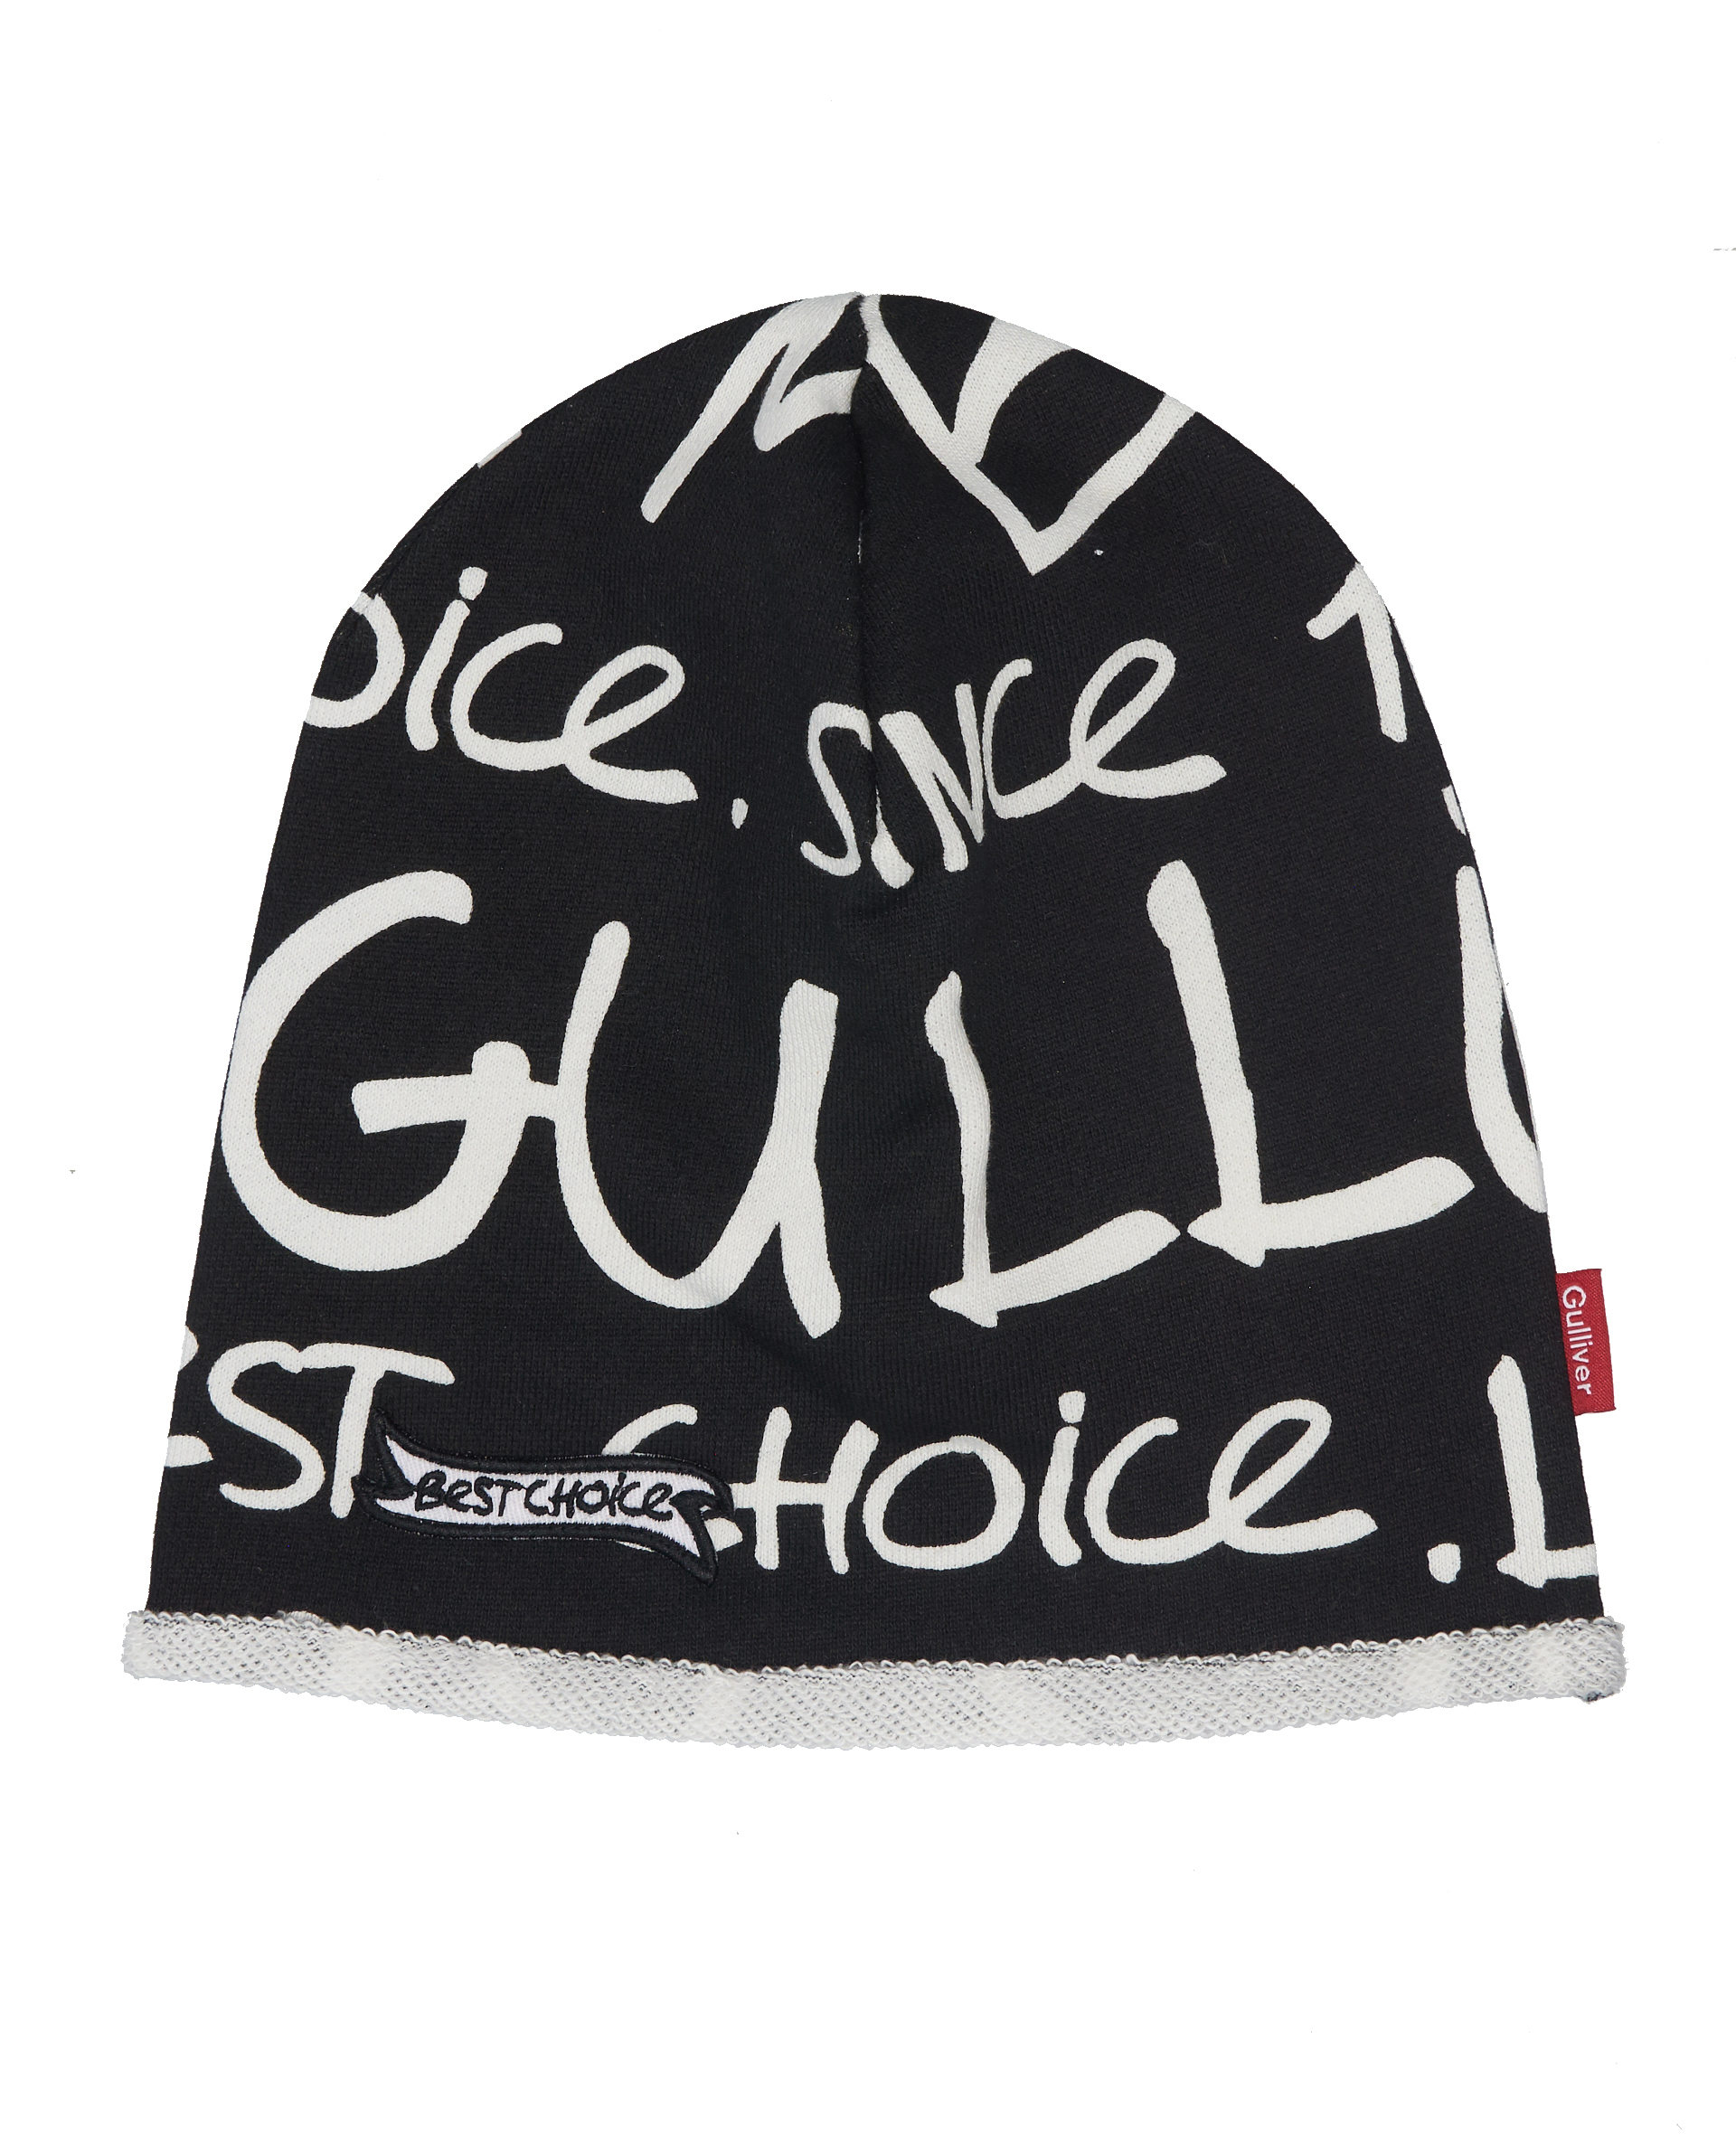 Черная трикотажная шапка со шрифтовым орнаментом Gulliver 11905BMC7302, размер 50 - фото 1